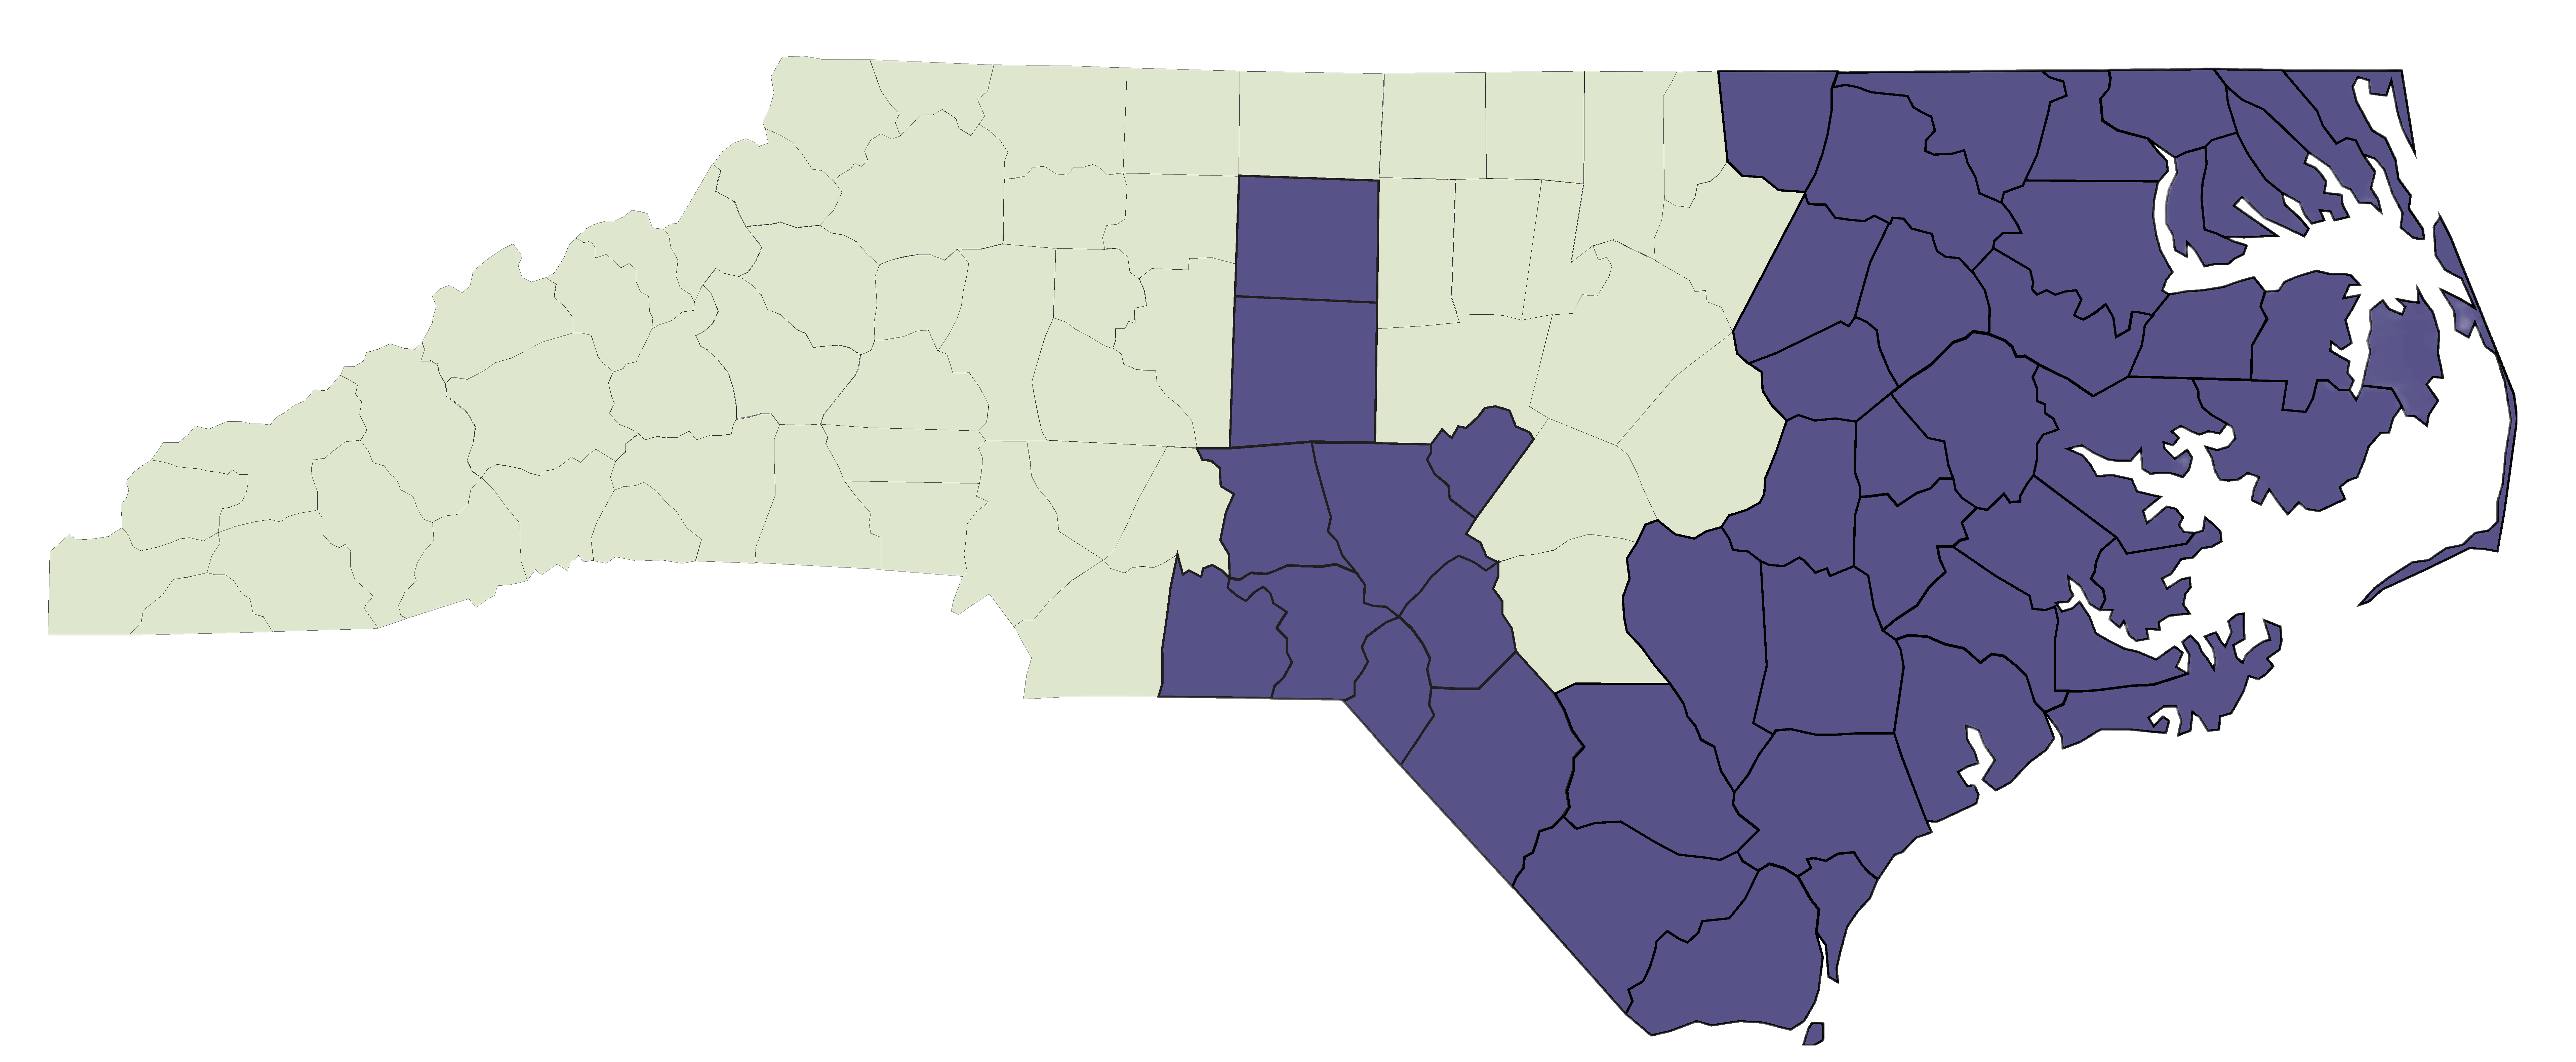 46 Trillium Counties Coverage